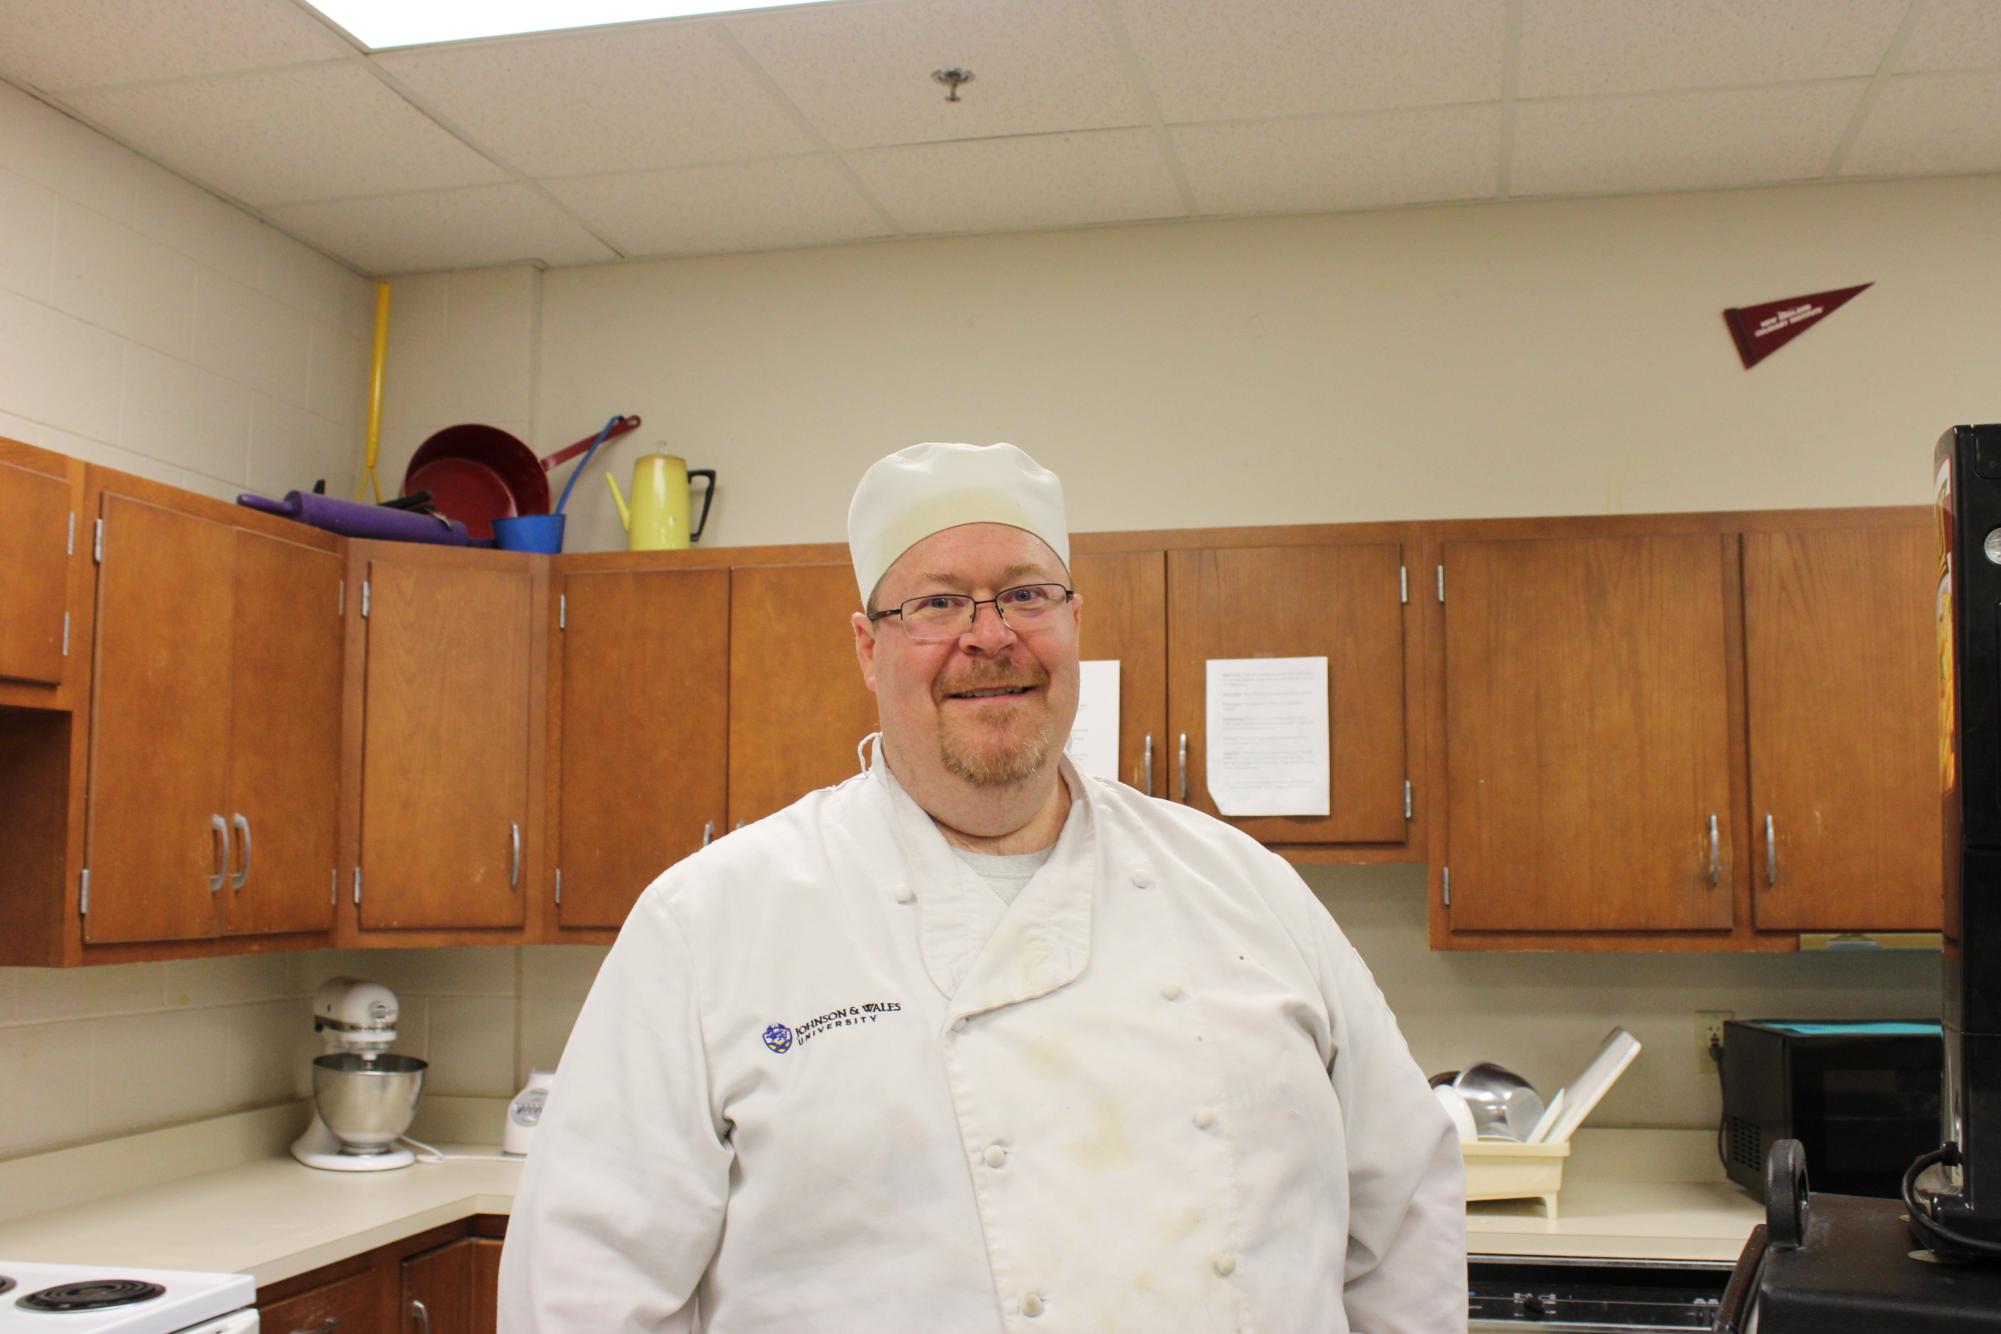 Mr. Saylor is the Culinary Arts teacher 